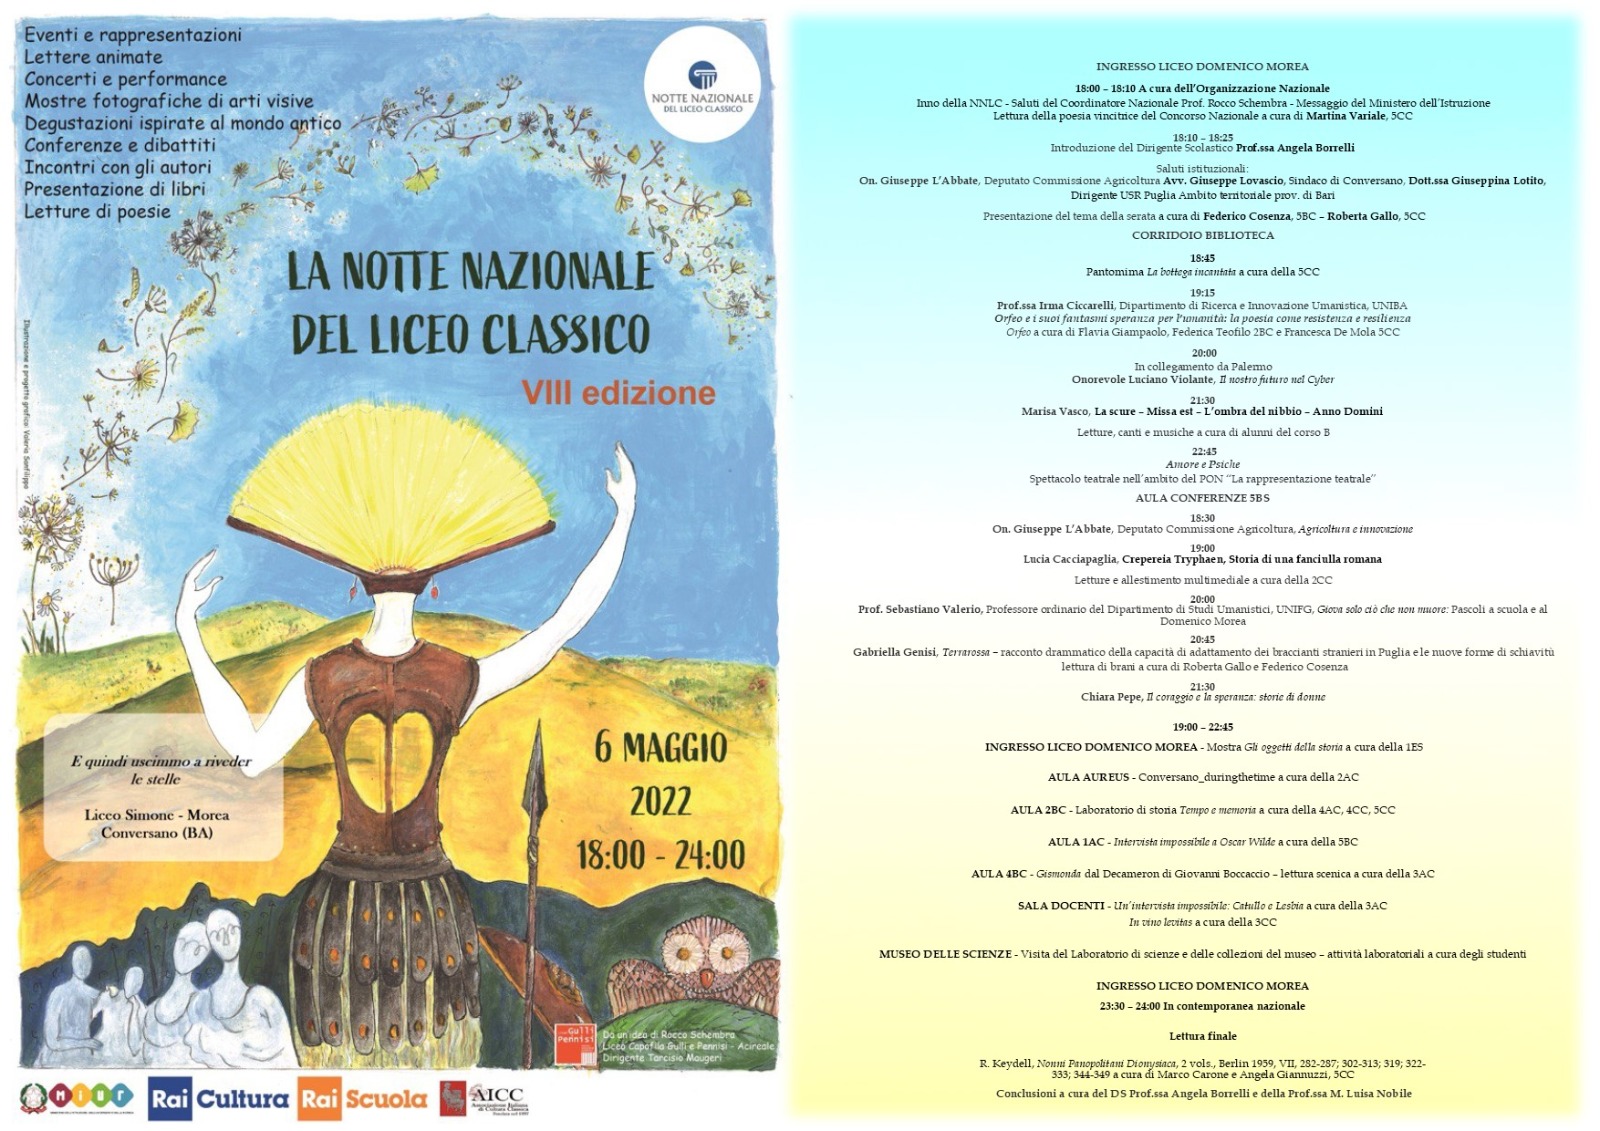 Notte Nazionale Liceo Classico 2022 - Liceo “Simone Simone” Conversano